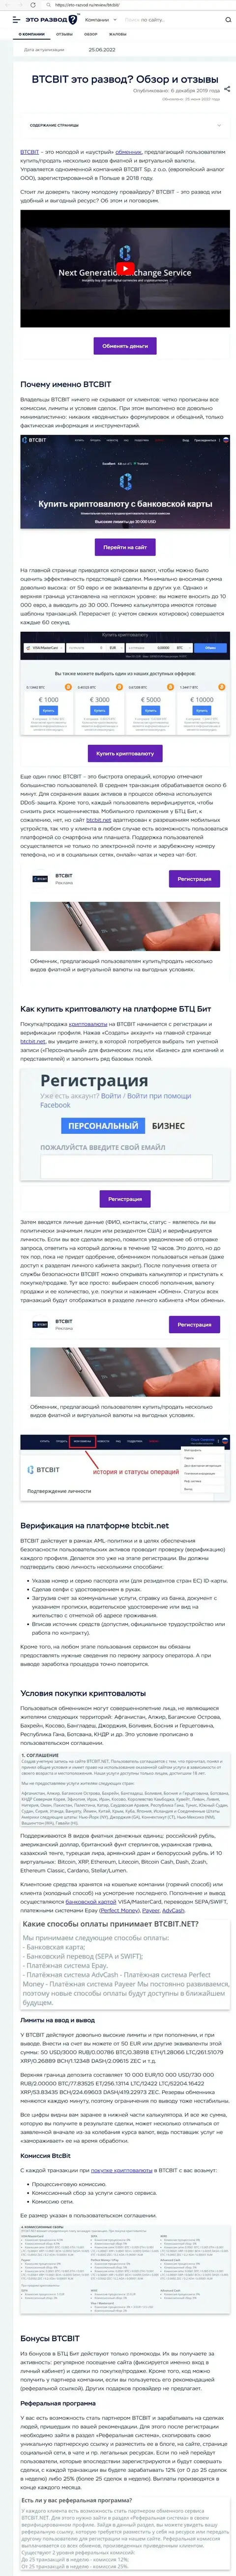 Обзор услуг и условия предоставления услуг онлайн-обменки BTCBit в обзорной статье на веб-сервисе eto-razvod ru